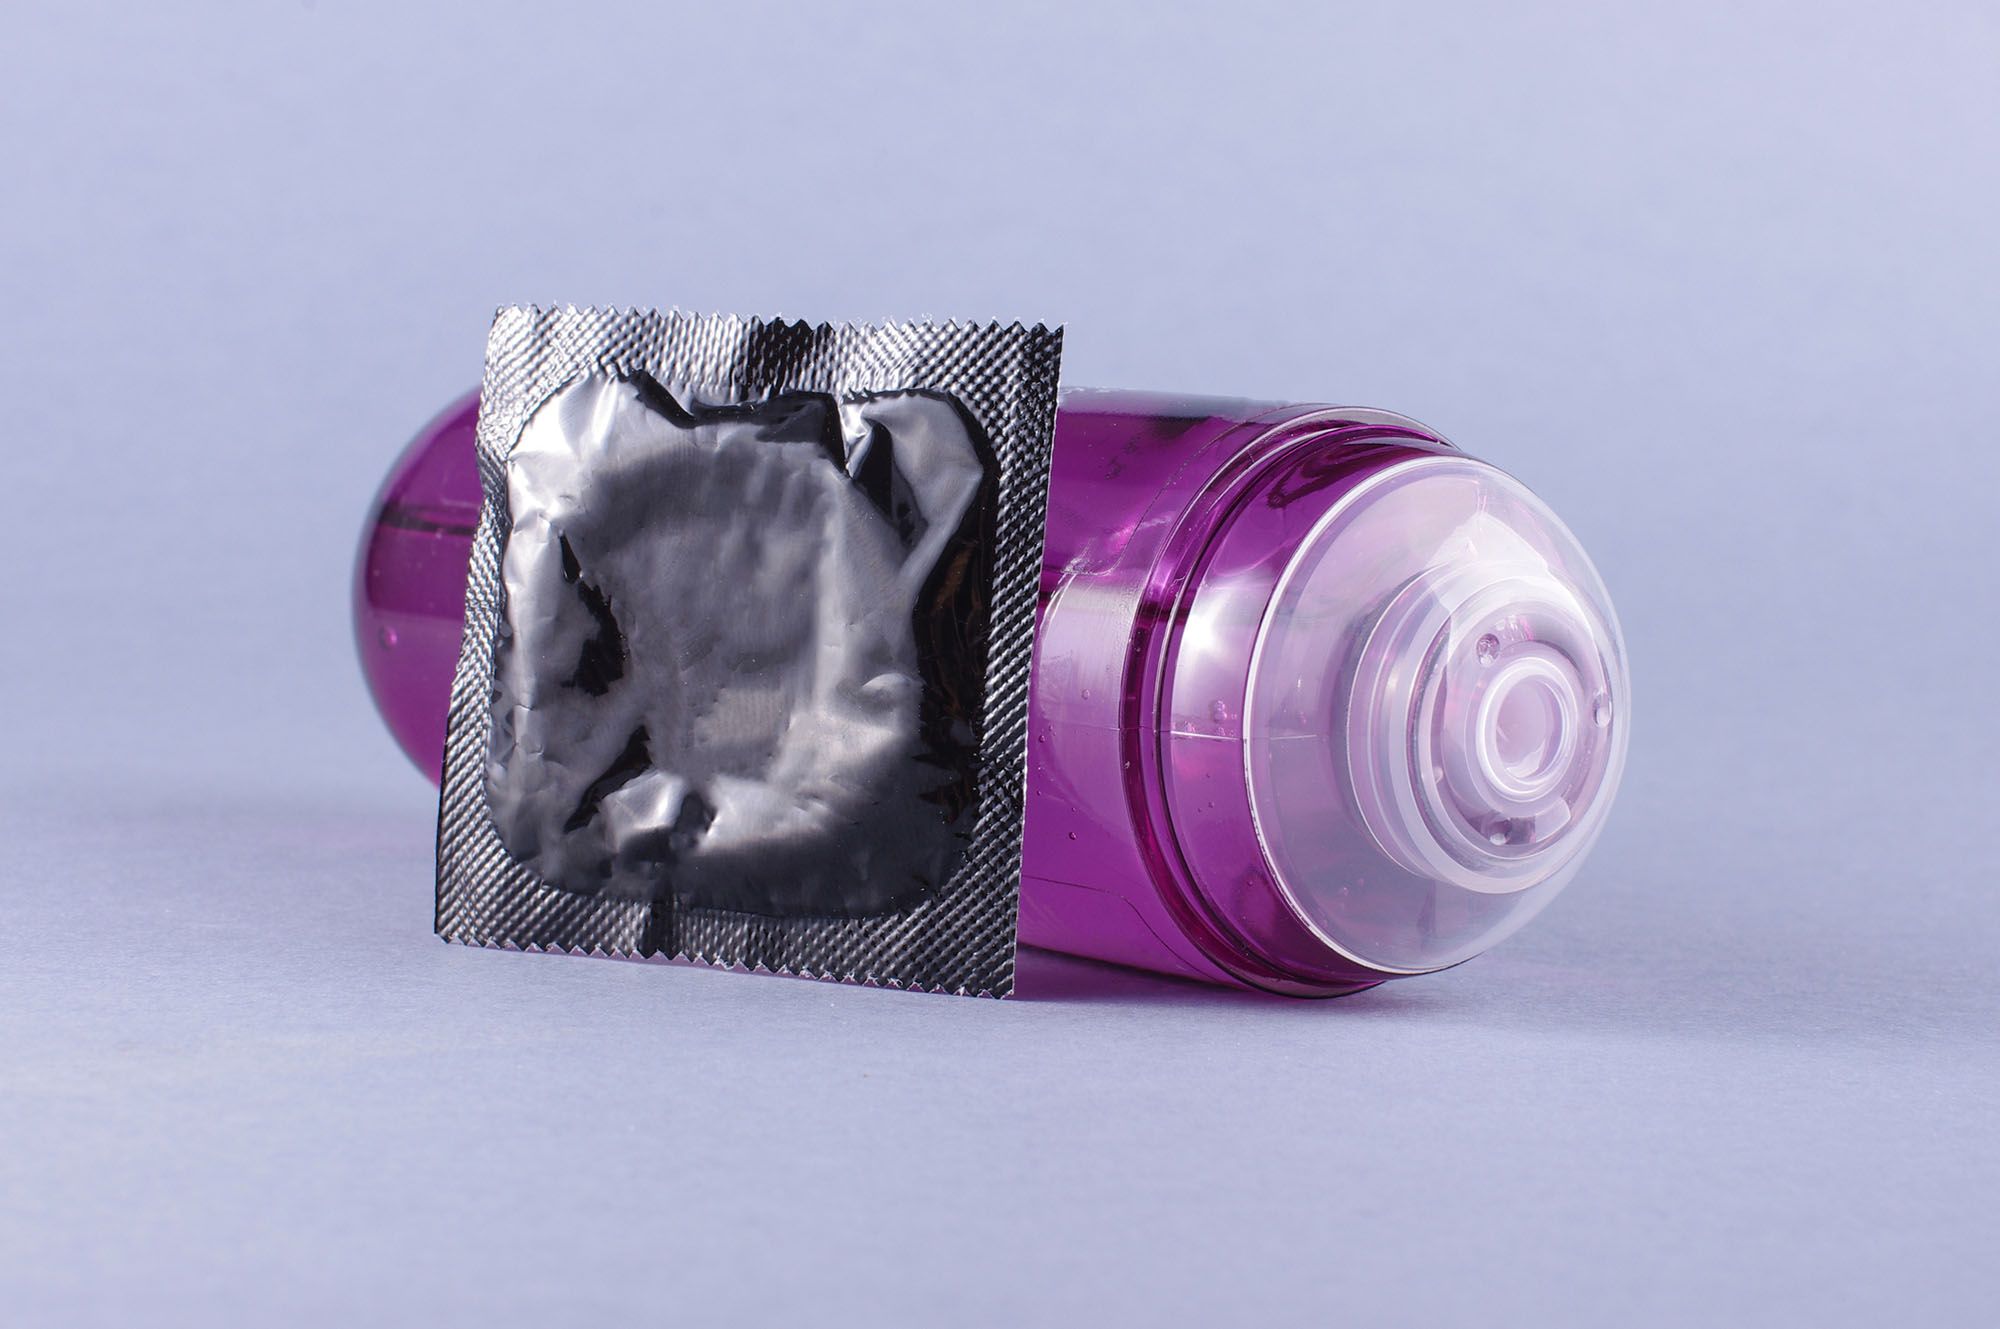 Gleitgel und Kondom